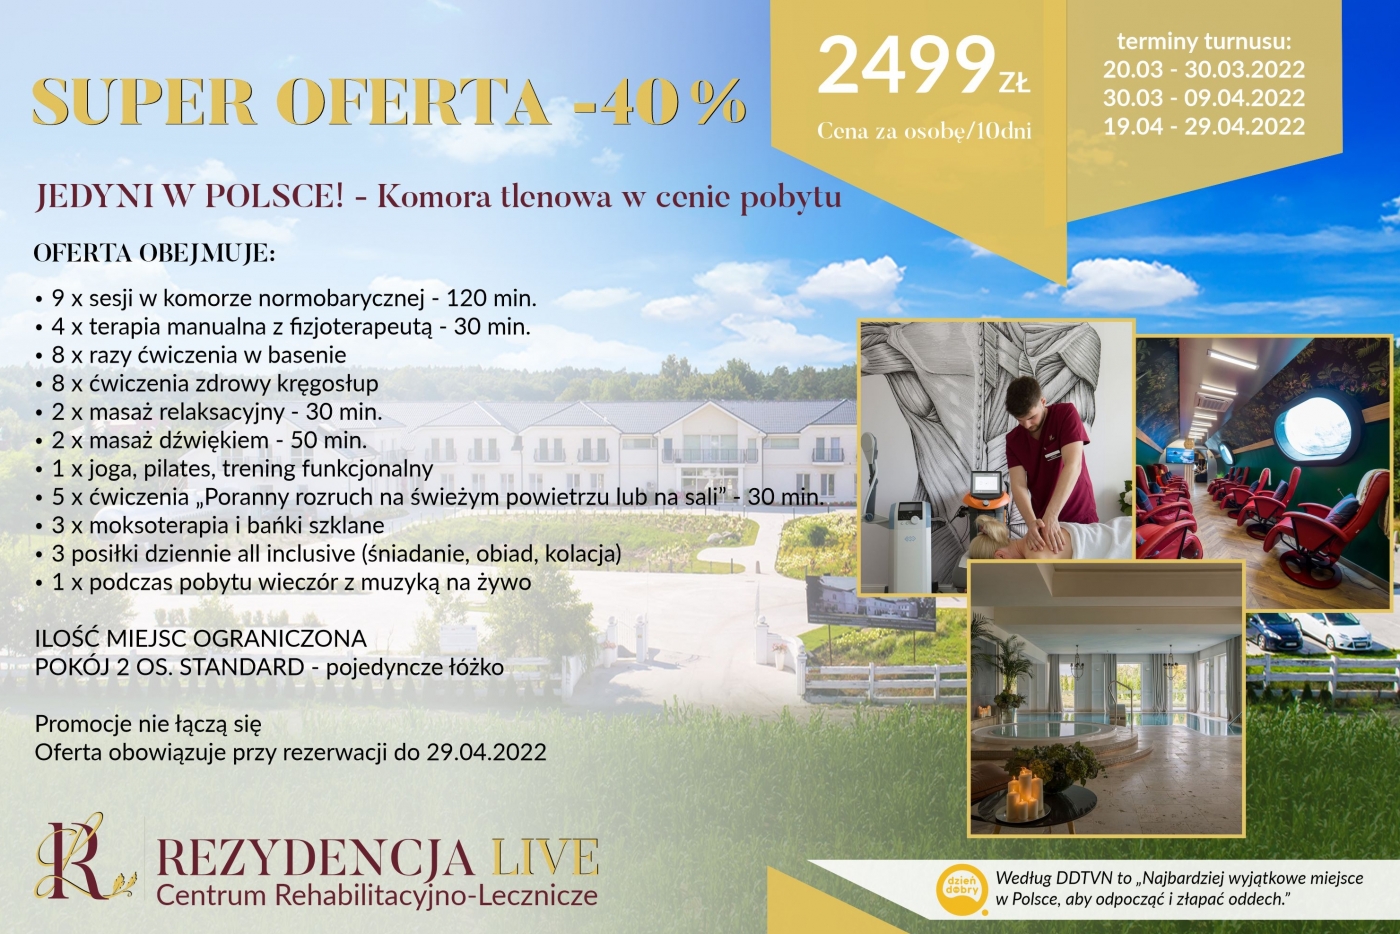 SUPER OFERTA -40% - REZERWACJA DO 29.04.2022